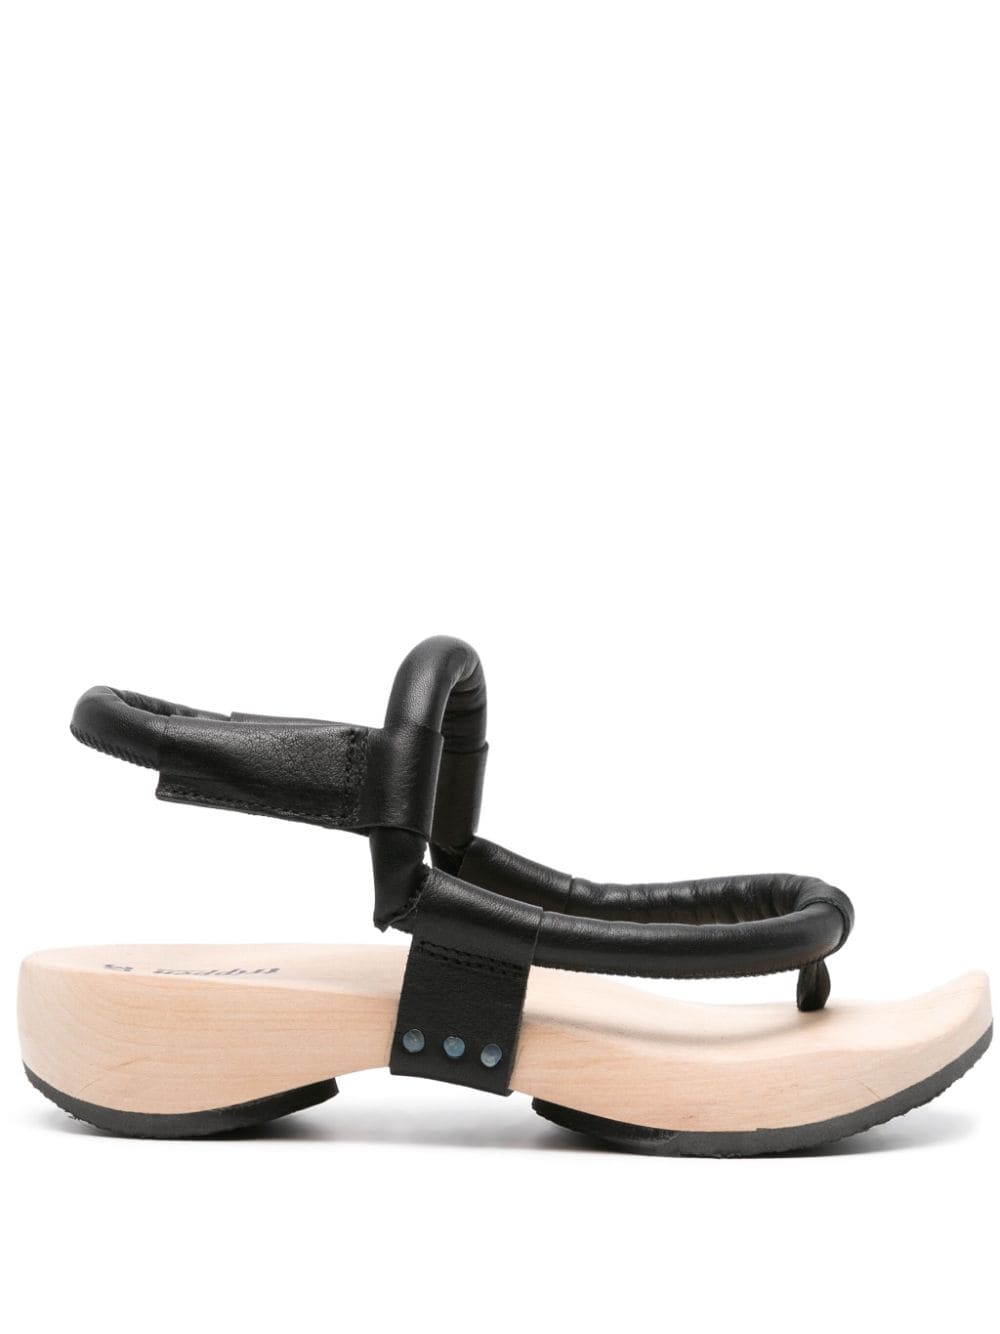 Trippen Hardwire leather sandals - Black von Trippen